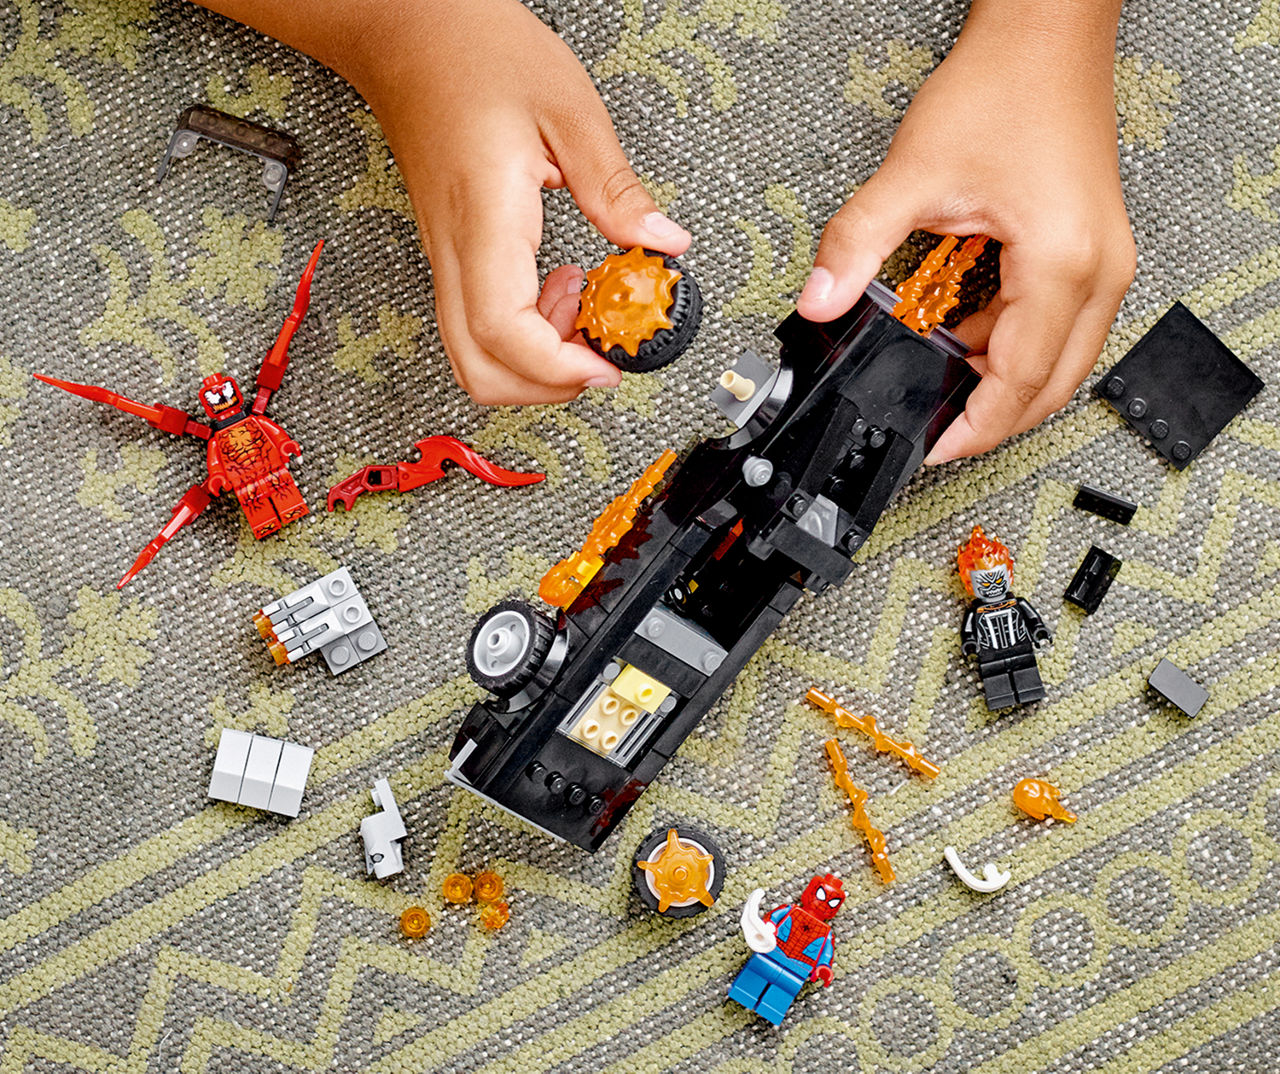 lego spiderman carnage set